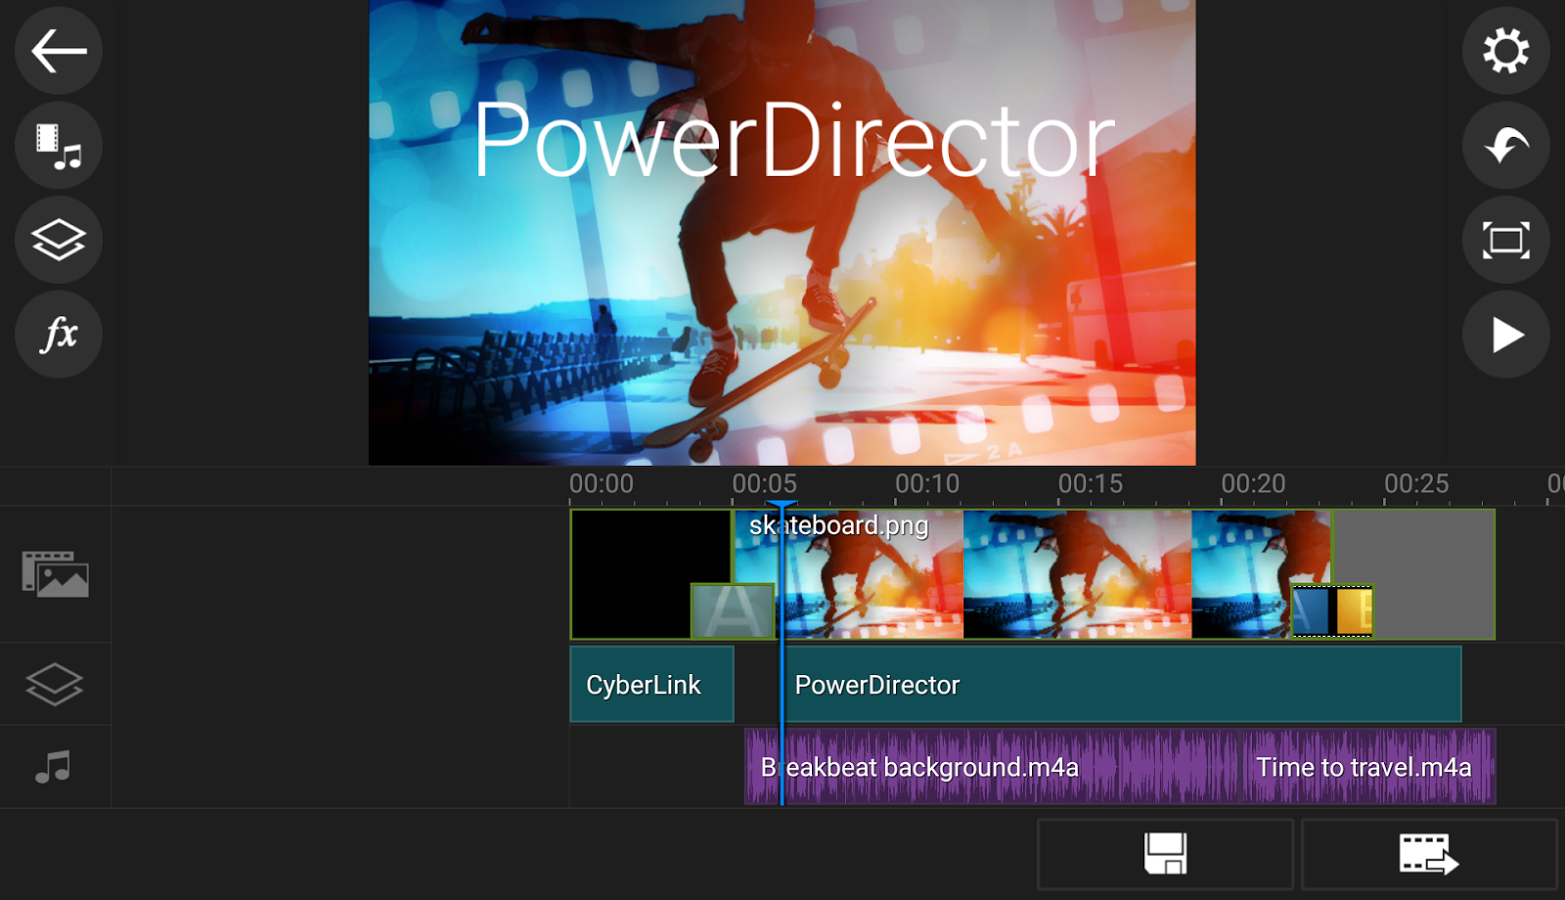 Cyberlink PowerDirector trở thành ứng dụng Android đầu tiên hỗ trợ biên tập video 4K